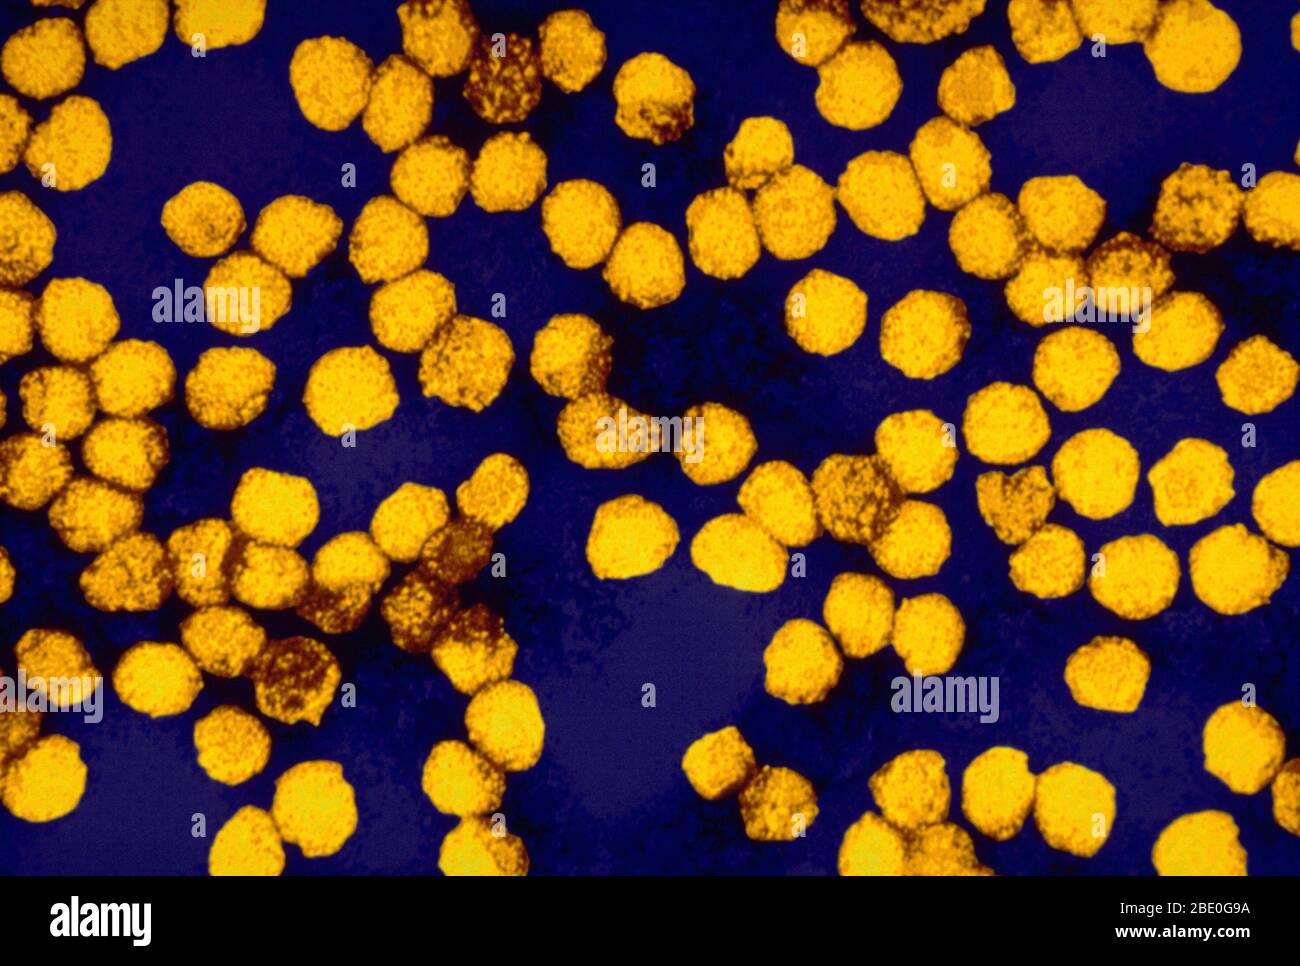 Farblich verstärkter Transmission Electron Micrograph (TEM) von Gelbfieber-Virusvirionen. Gelbfieber wird durch das Gelbfiebervirus der Familie Flaviviridae verursacht. Es war die erste Krankheit, die durch gefiltertes menschliches Serum übertragbar und durch Mücken übertragen wurde, von Walter Reed um 1900. Die positiv-sense, Single-strängige RNA ist etwa 11,000 Nukleotide lang und hat einen einzigen offenen Leserahmen, der ein Polyprotein kodiert. Gelbfieber ist eine Viruserkrankung von typischerweise kurzer Dauer. In den meisten Fällen sind Symptome wie Fieber, Schüttelfrost, Appetitlosigkeit, Übelkeit, Muskelschmerzen, insbesondere im Bac Stockfoto